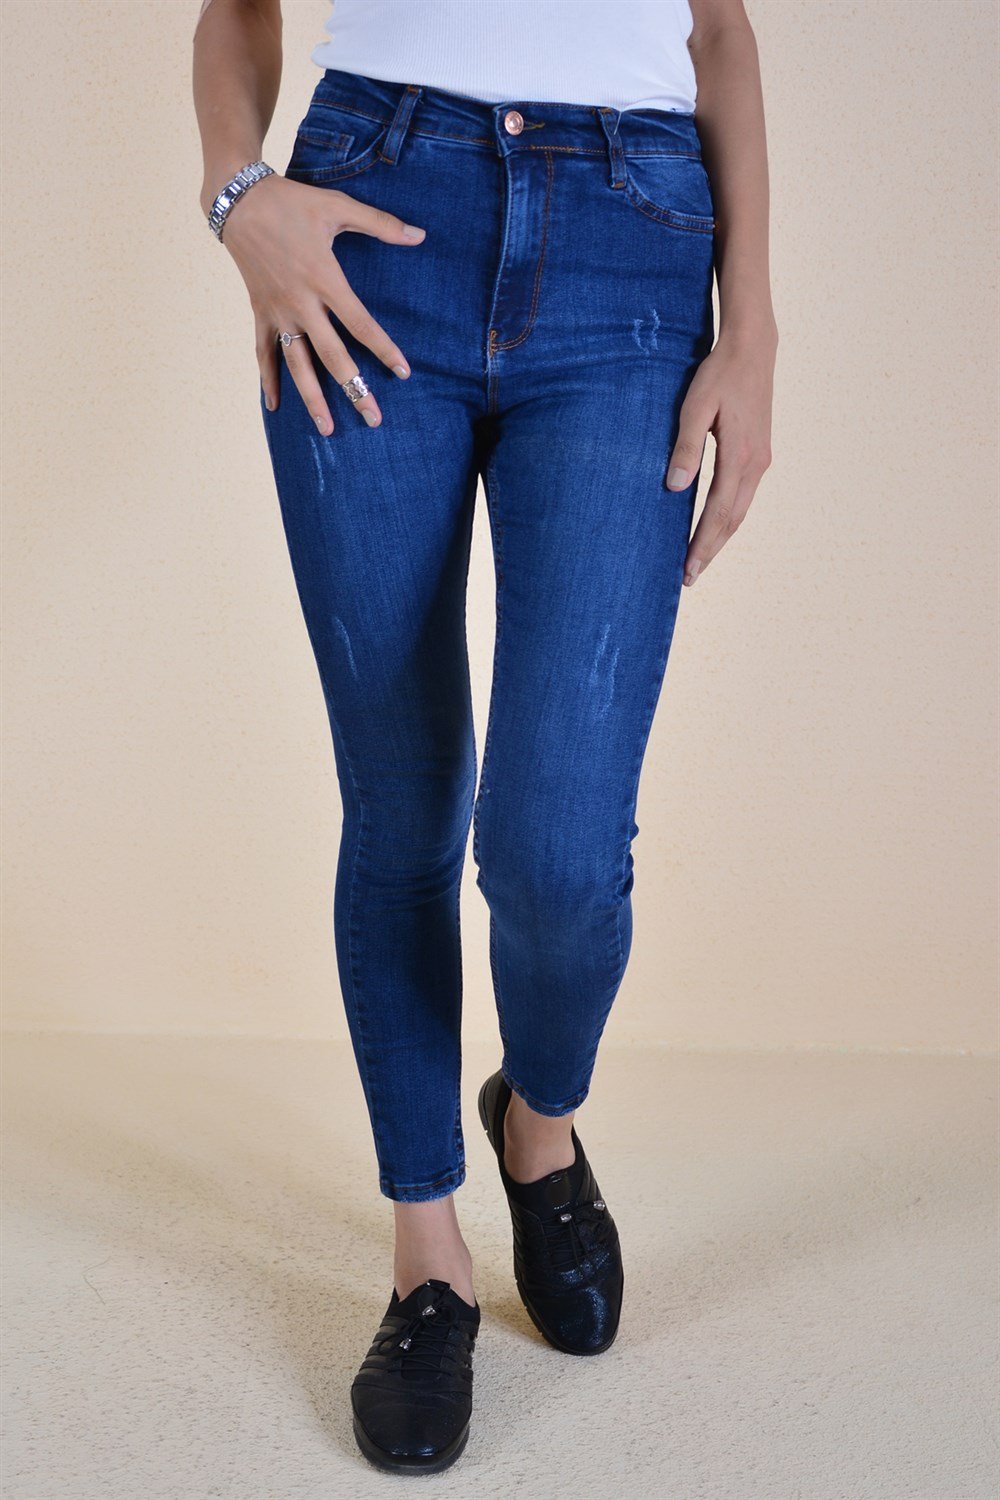 Kot Taşlama Desen Kadın Pantolon - Koyu Mavi - Butik Buruç